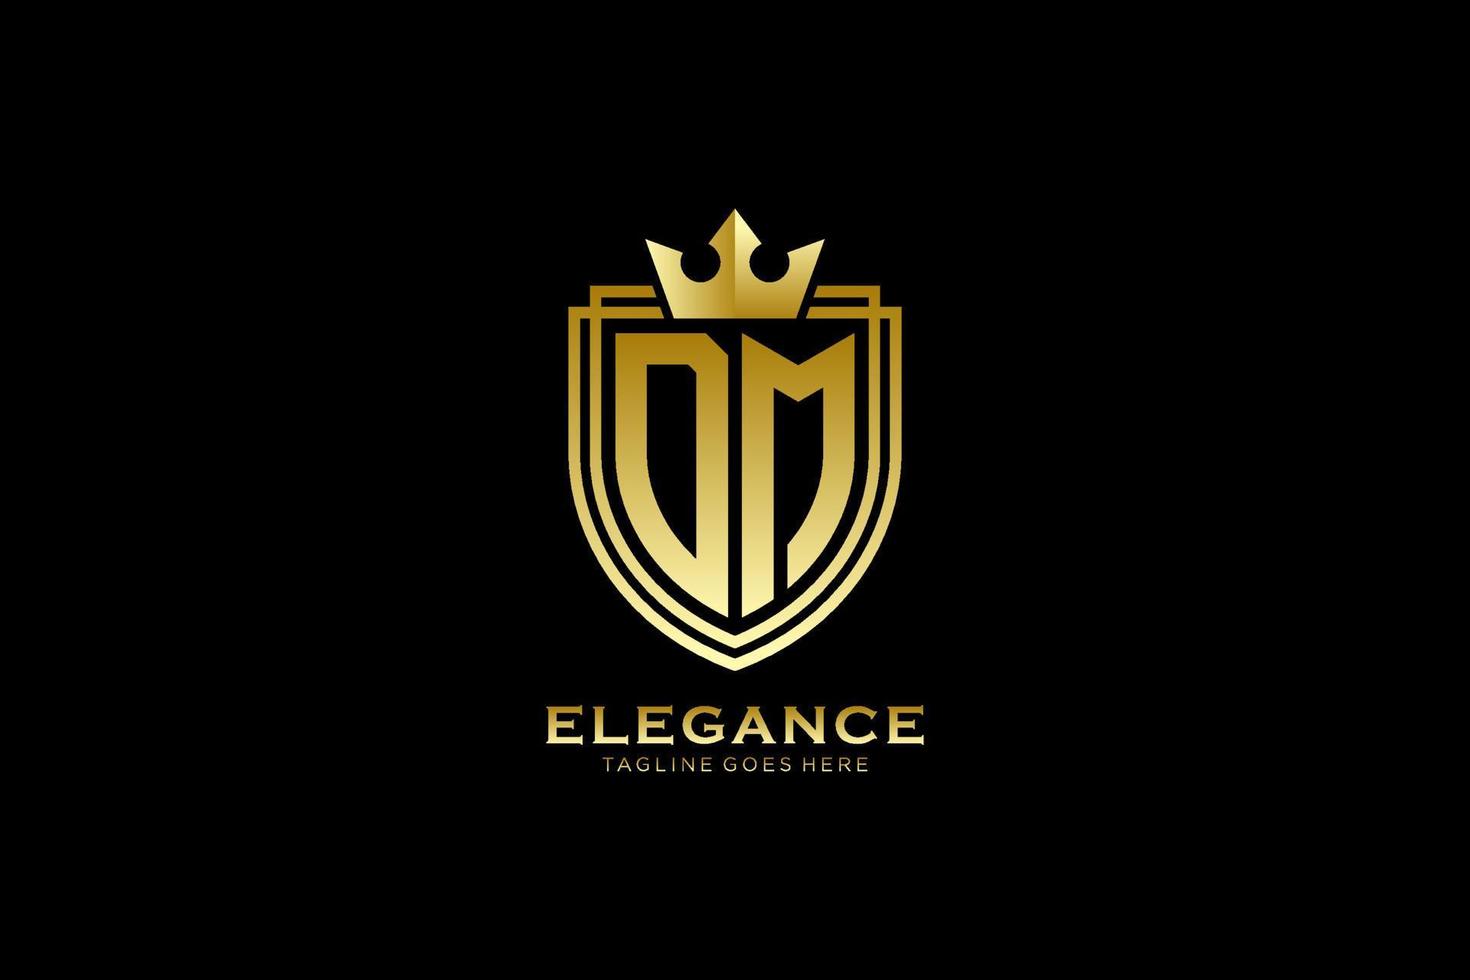 logotipo de monograma de lujo inicial dm elegante o plantilla de placa con pergaminos y corona real - perfecto para proyectos de marca de lujo vector